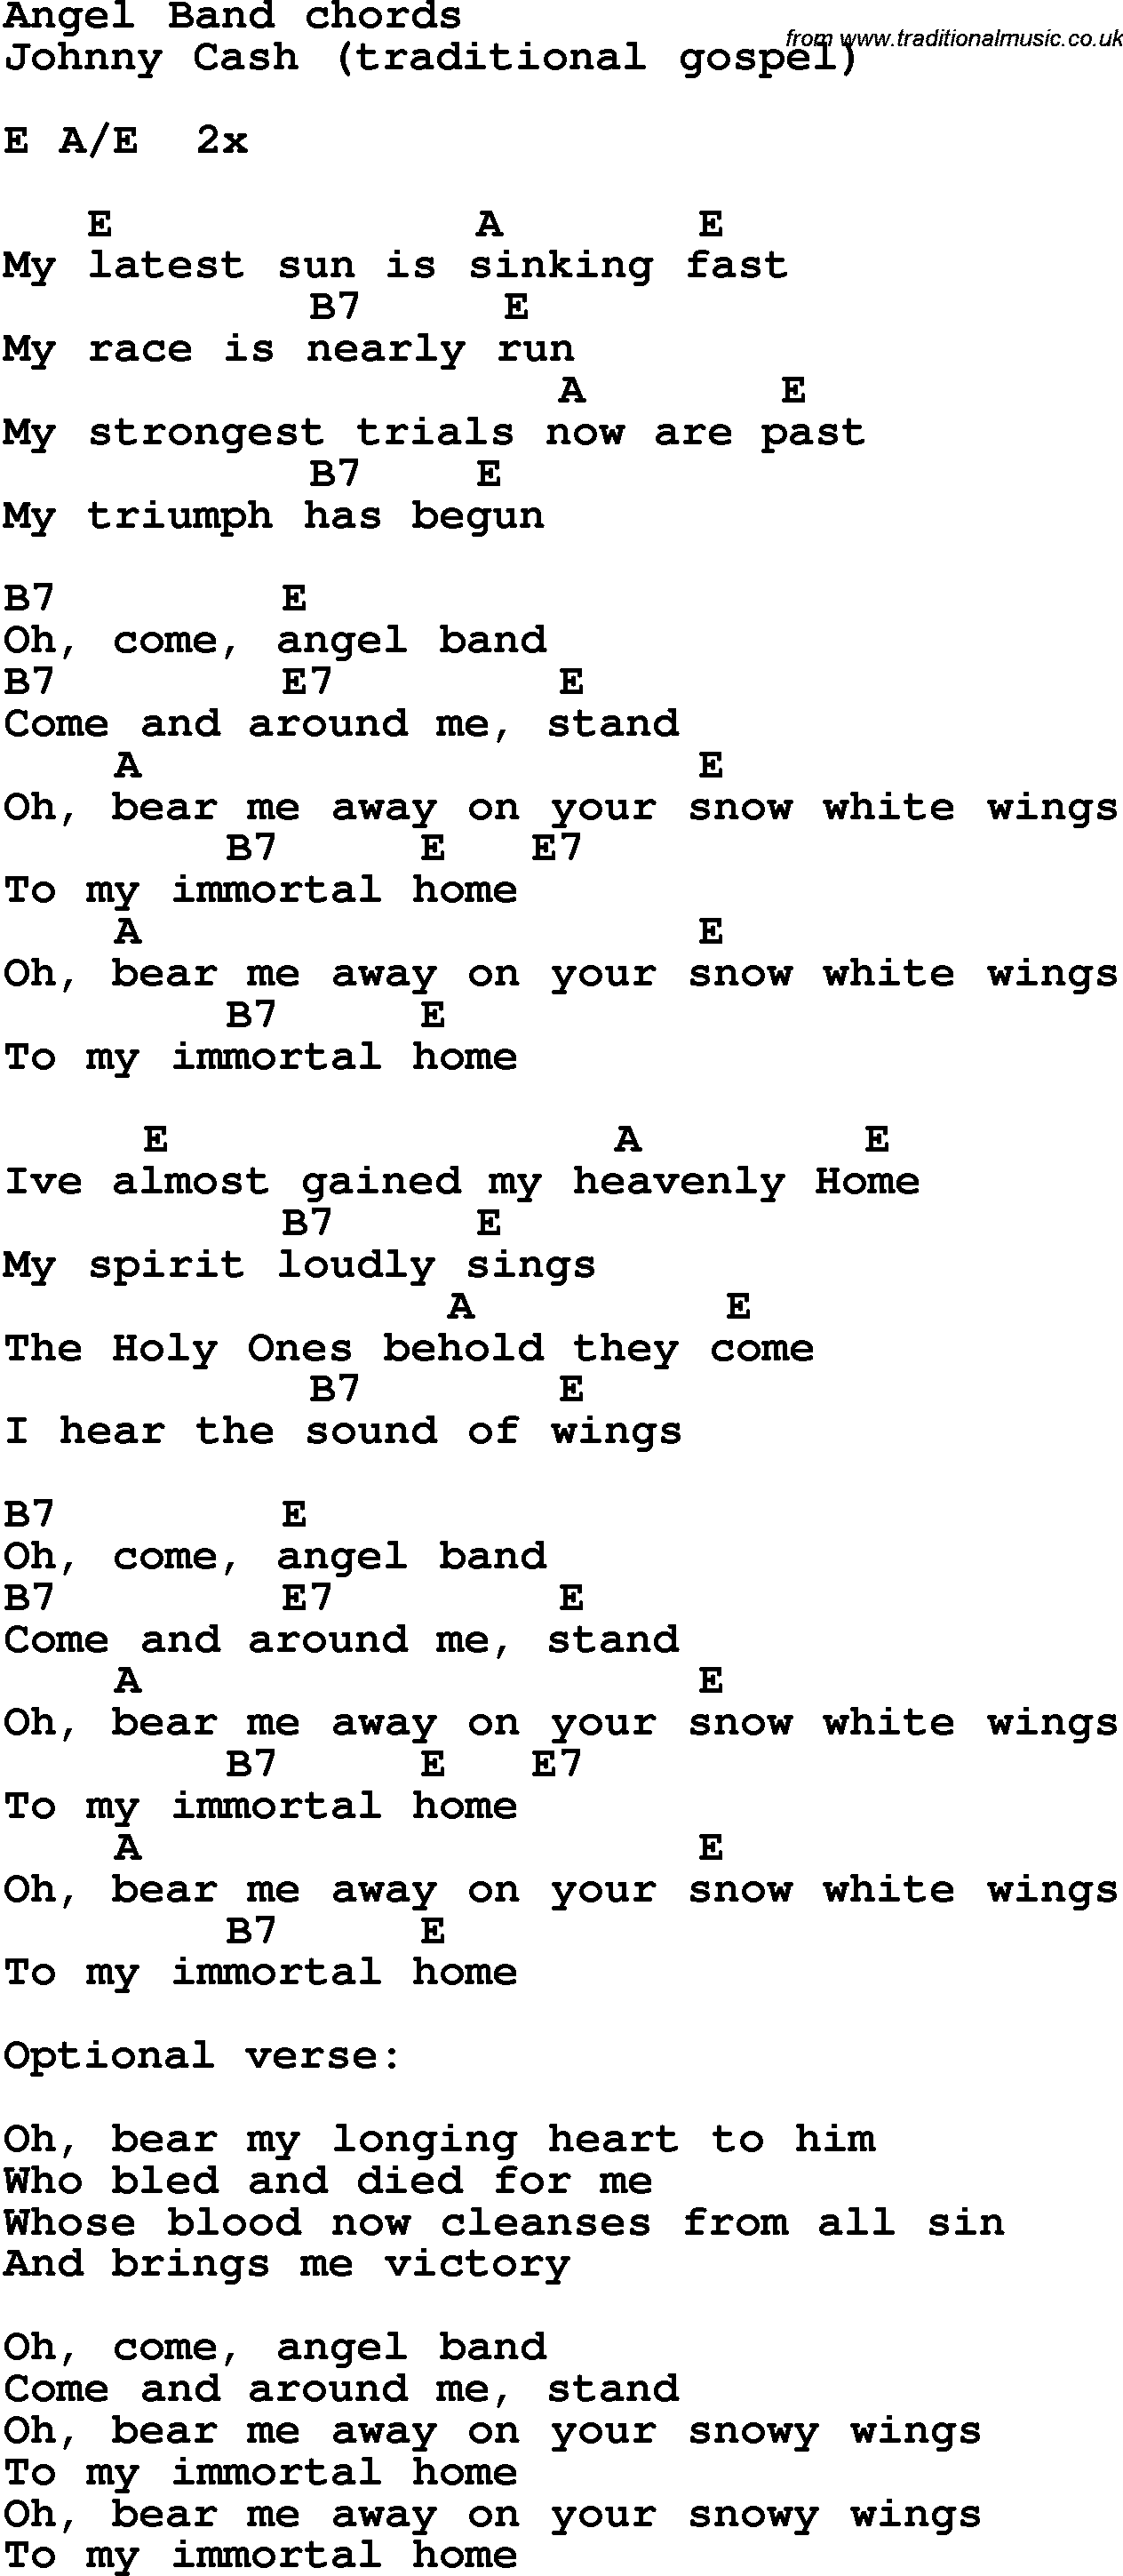 Angel chord